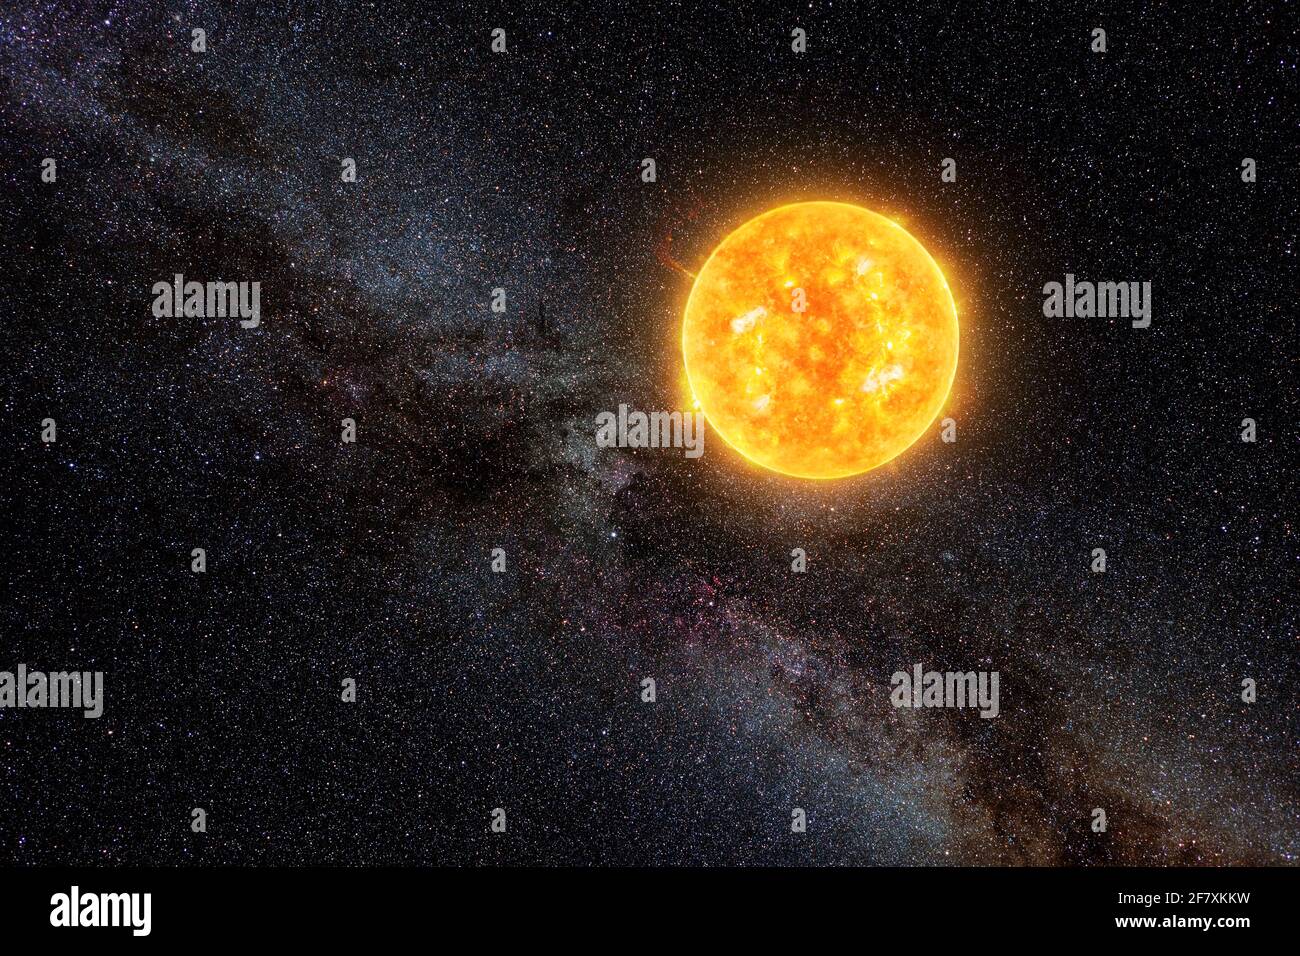 Soleil brillant contre ciel étoilé foncé et voie lactée dans le système solaire, éléments de cette image fournis par la NASA Banque D'Images